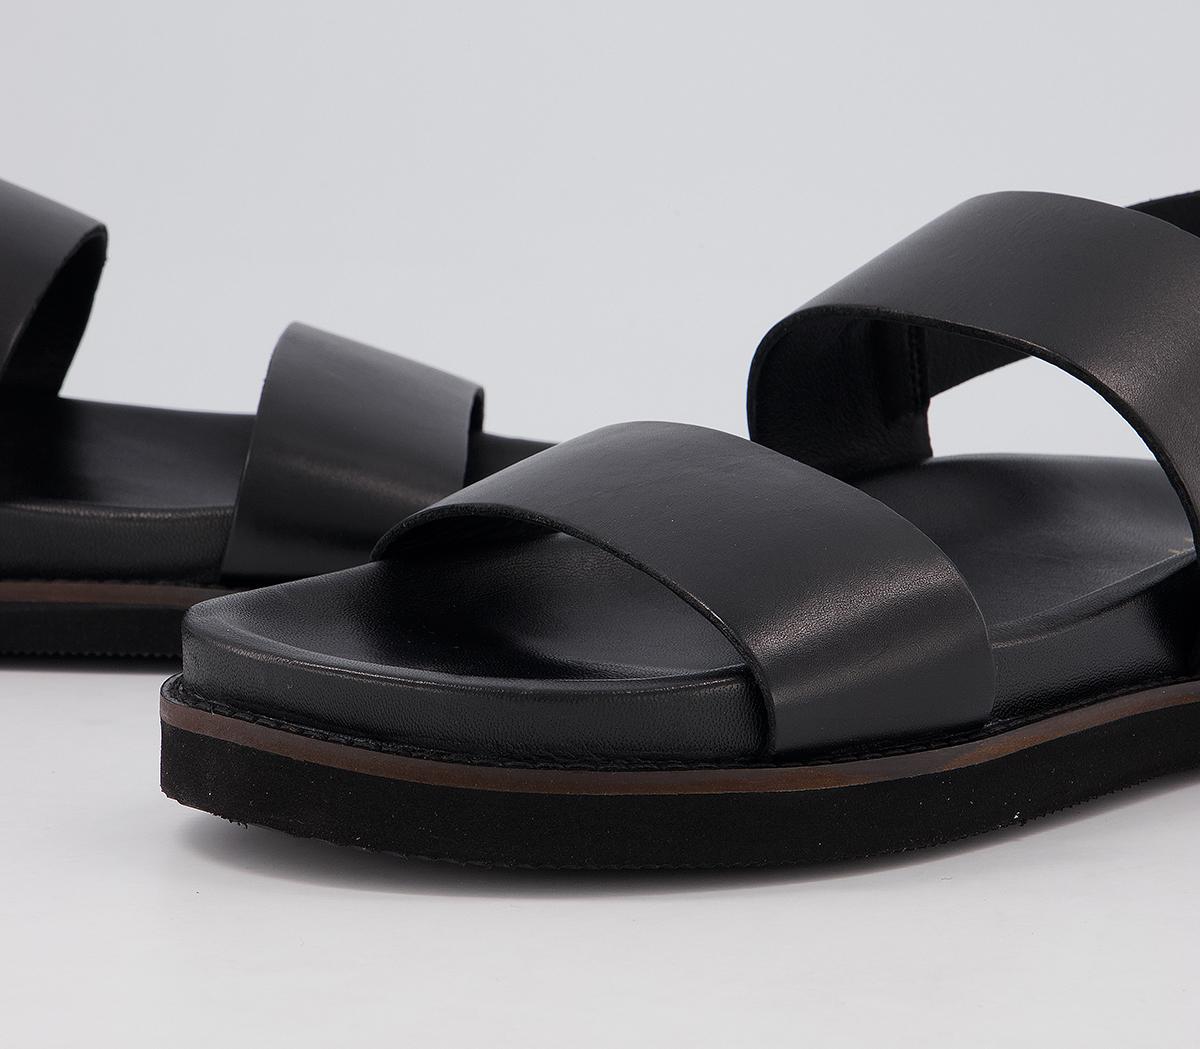 Walk London Jackson Sandals Black Leather - Men’s Sandals